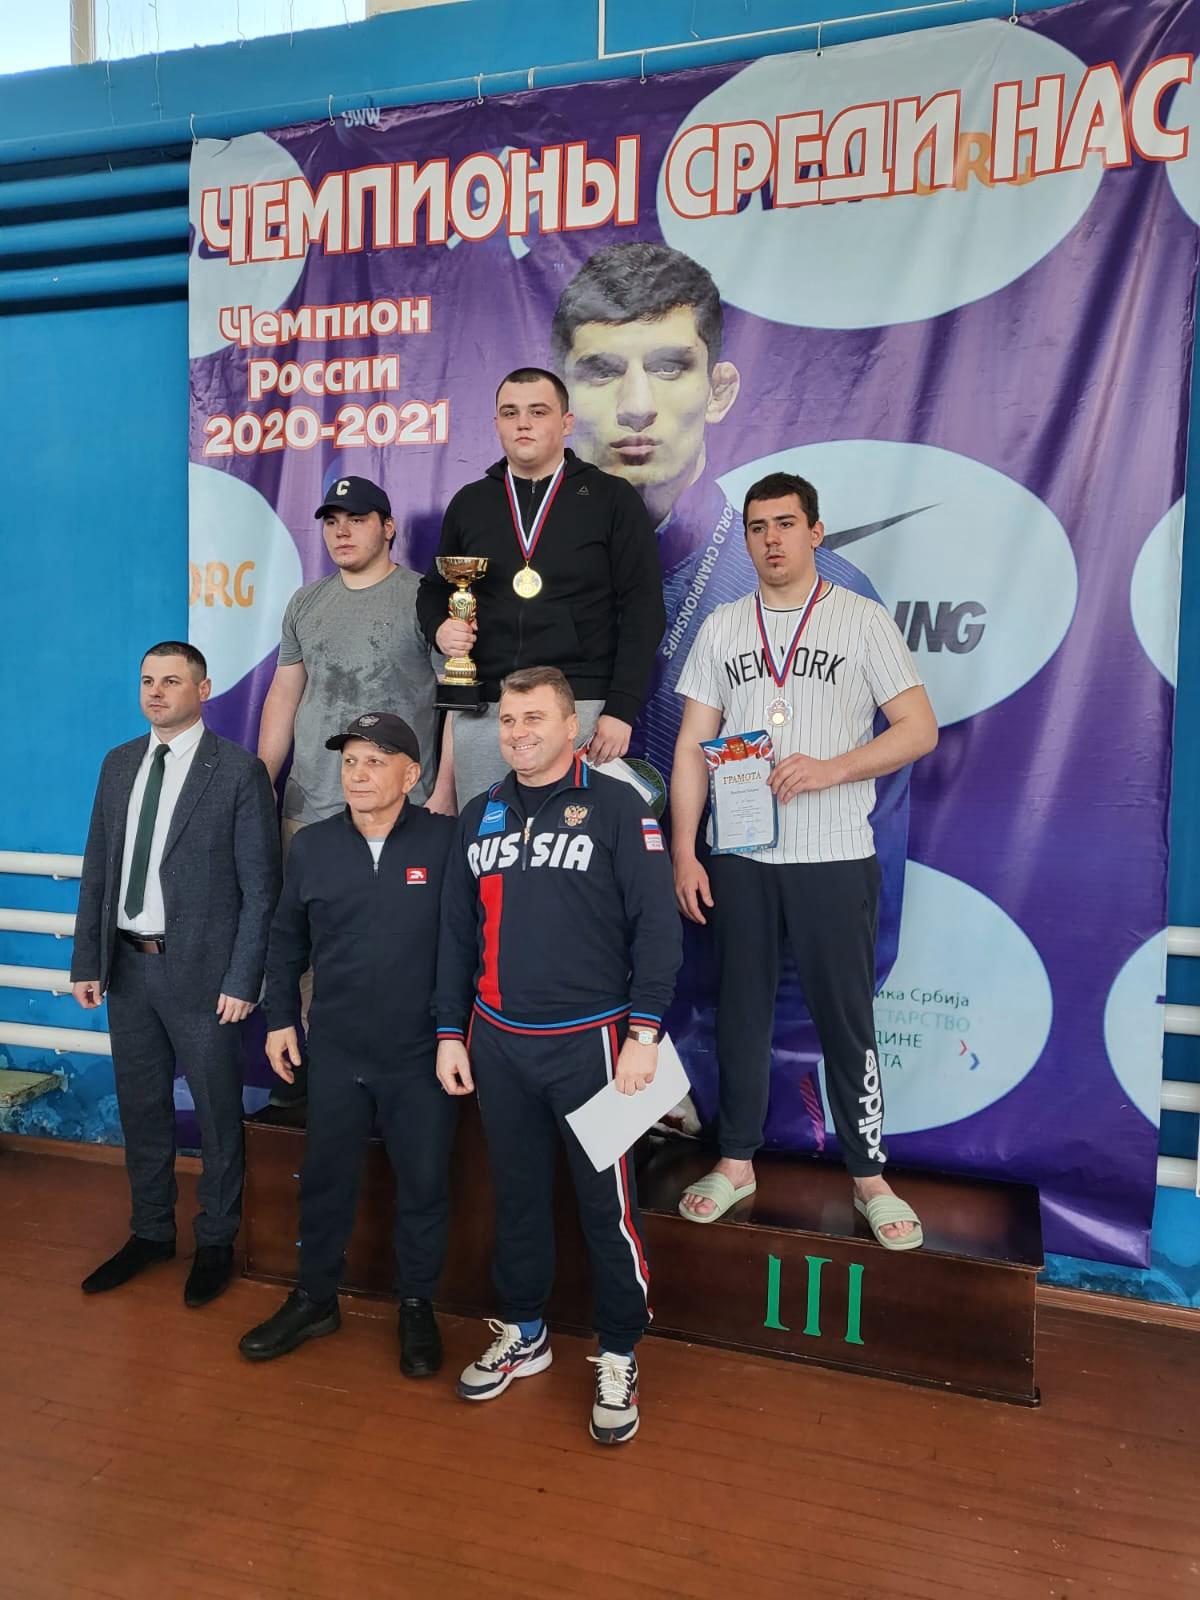 Орловские борцы завоевали три медали на первенстве ЦФО среди юниоров 